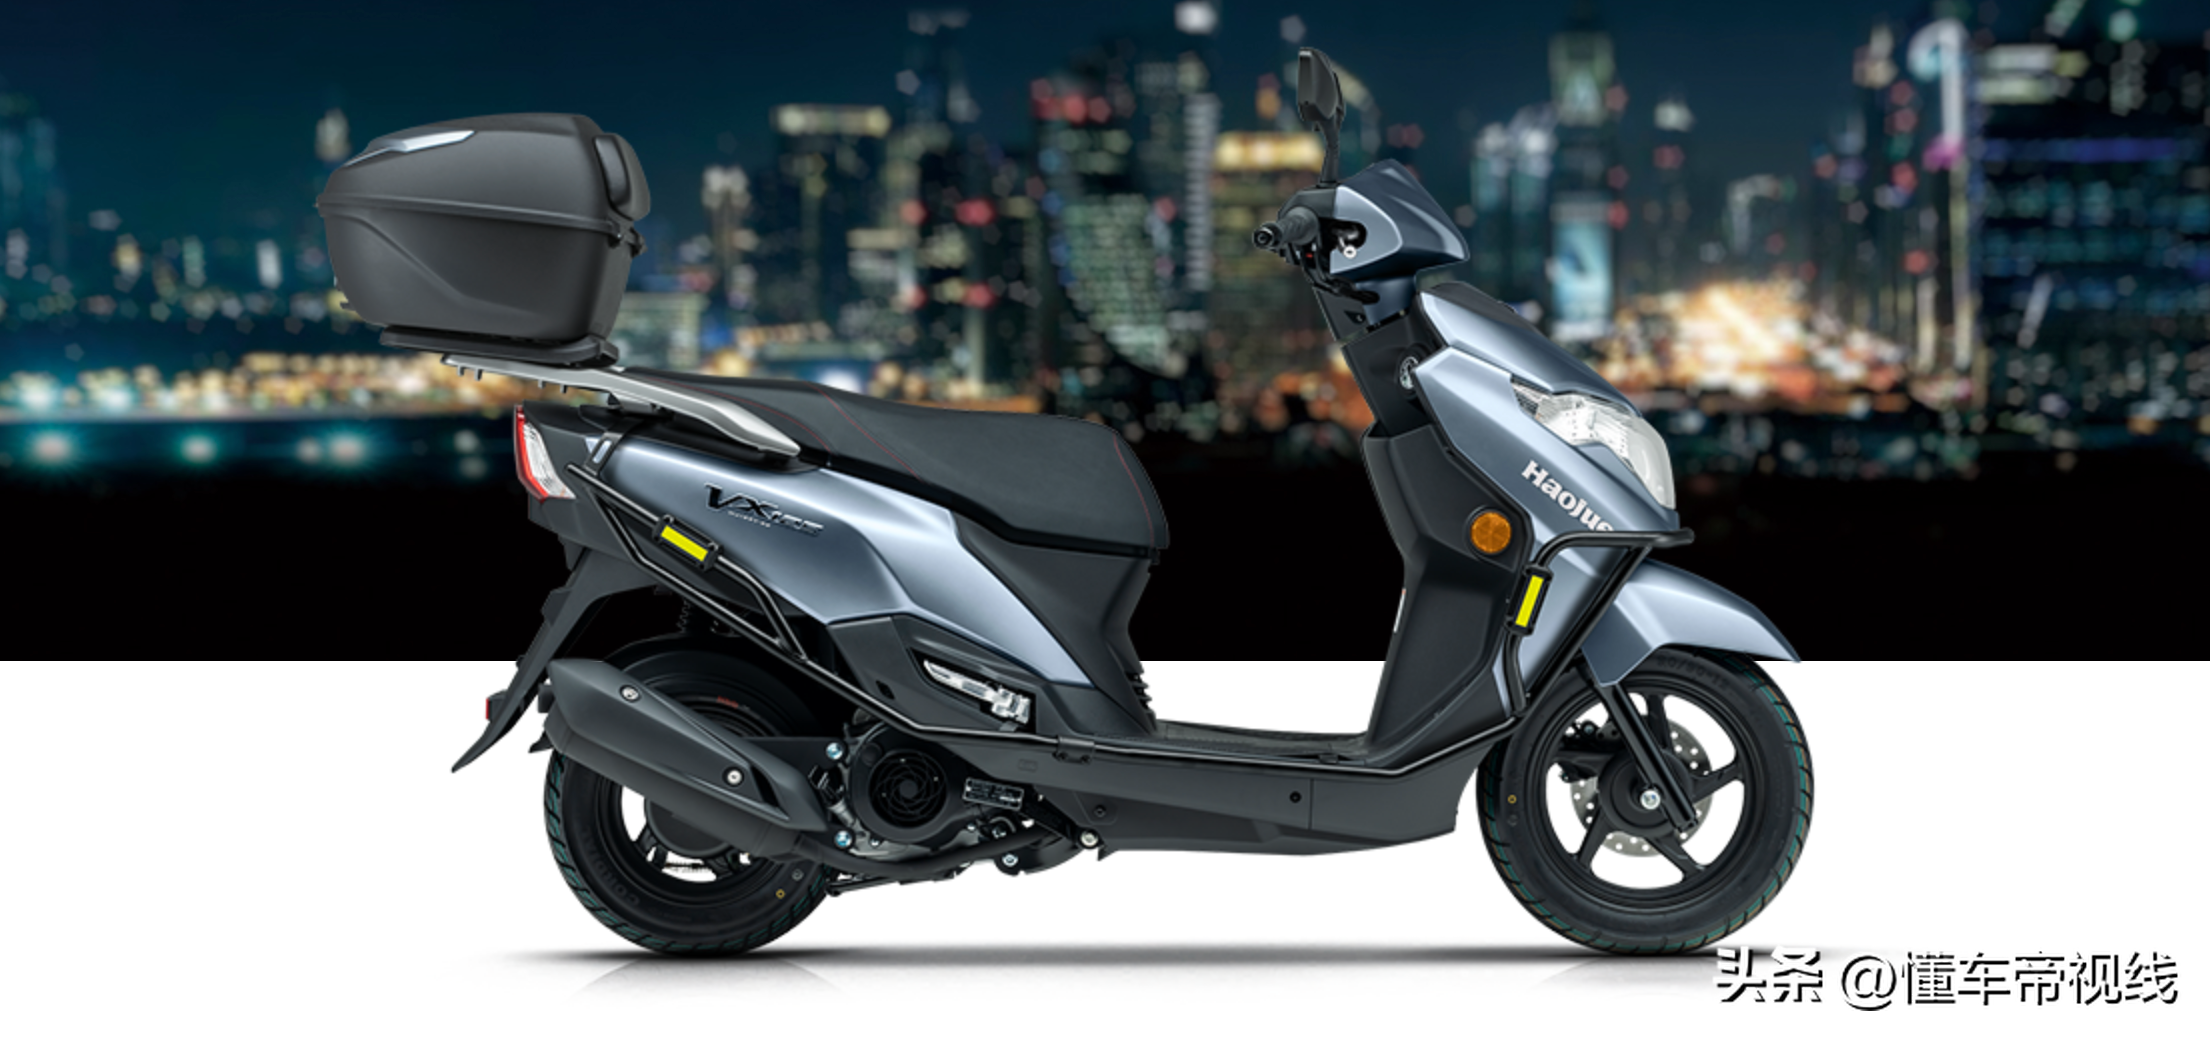 豪爵vx125踏板摩托正式上市!配备液晶仪表,可调式减振!